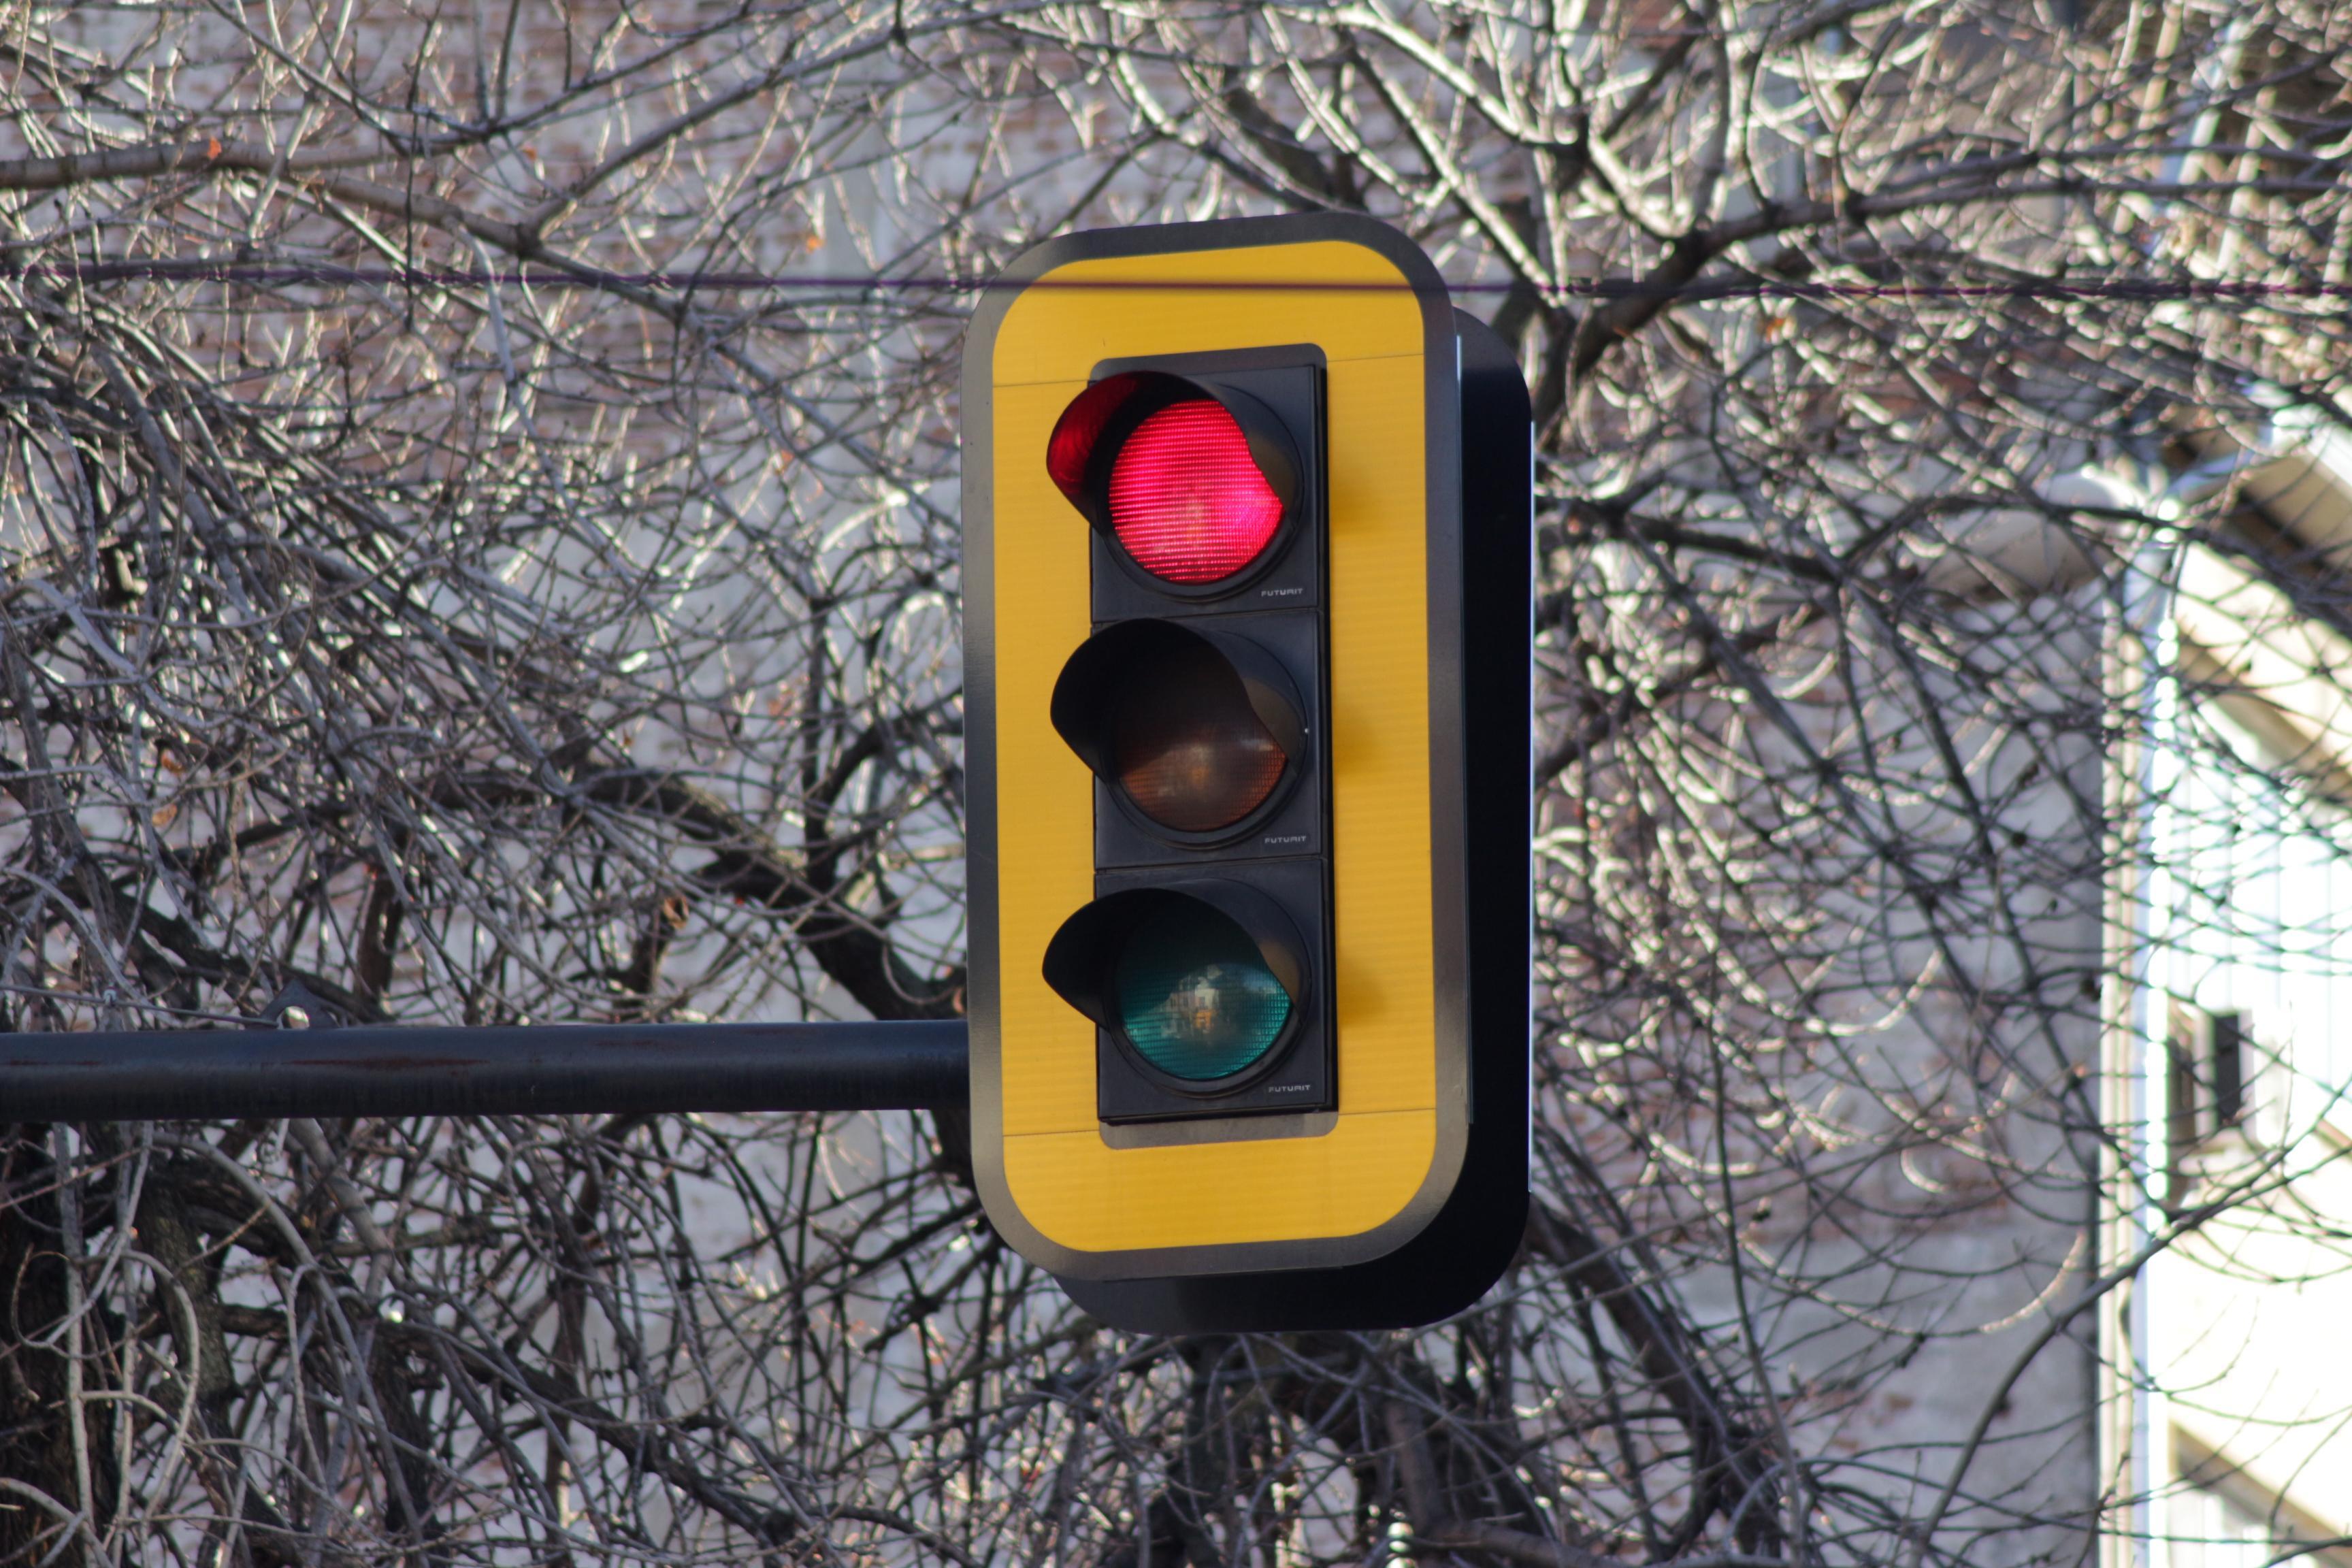 Край с предупредителното мигане на светофарите в София